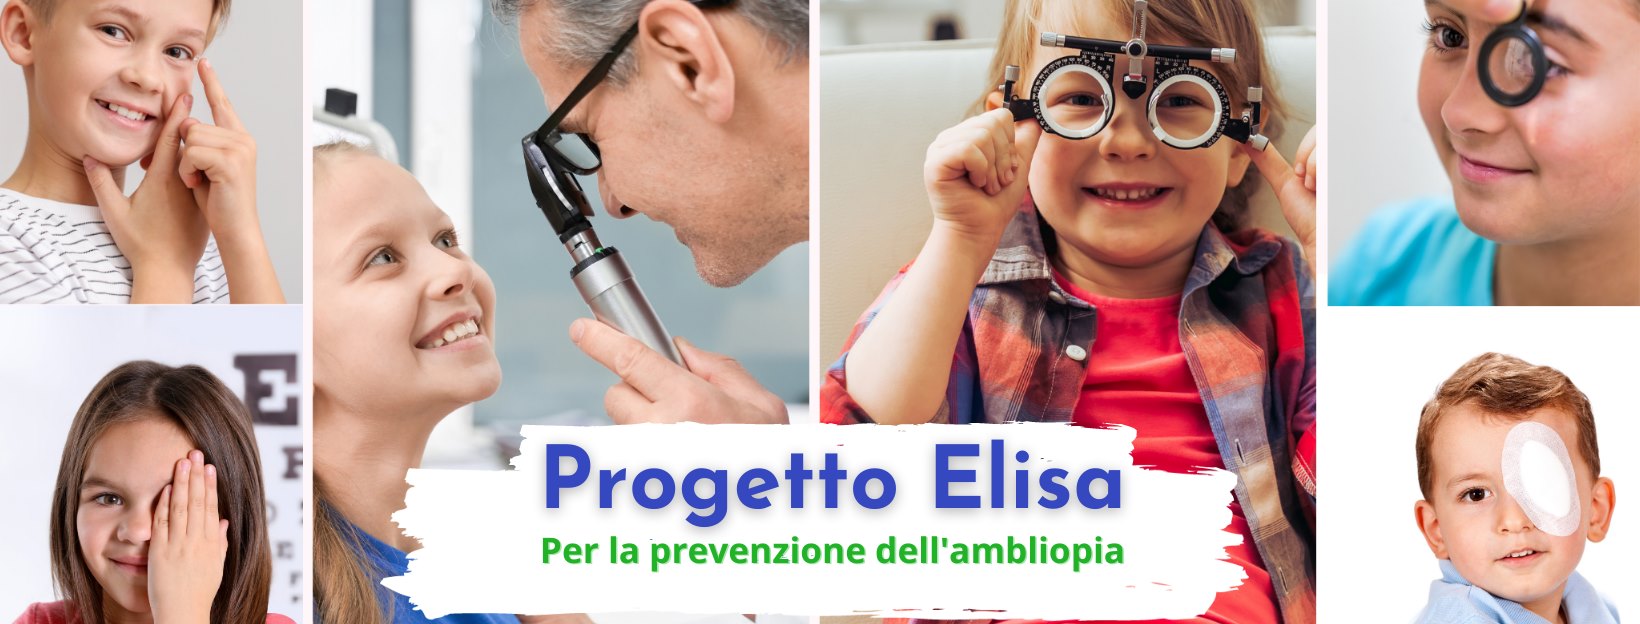 Ailr e Progetto Elisa unite per la prevenzione pediatrica